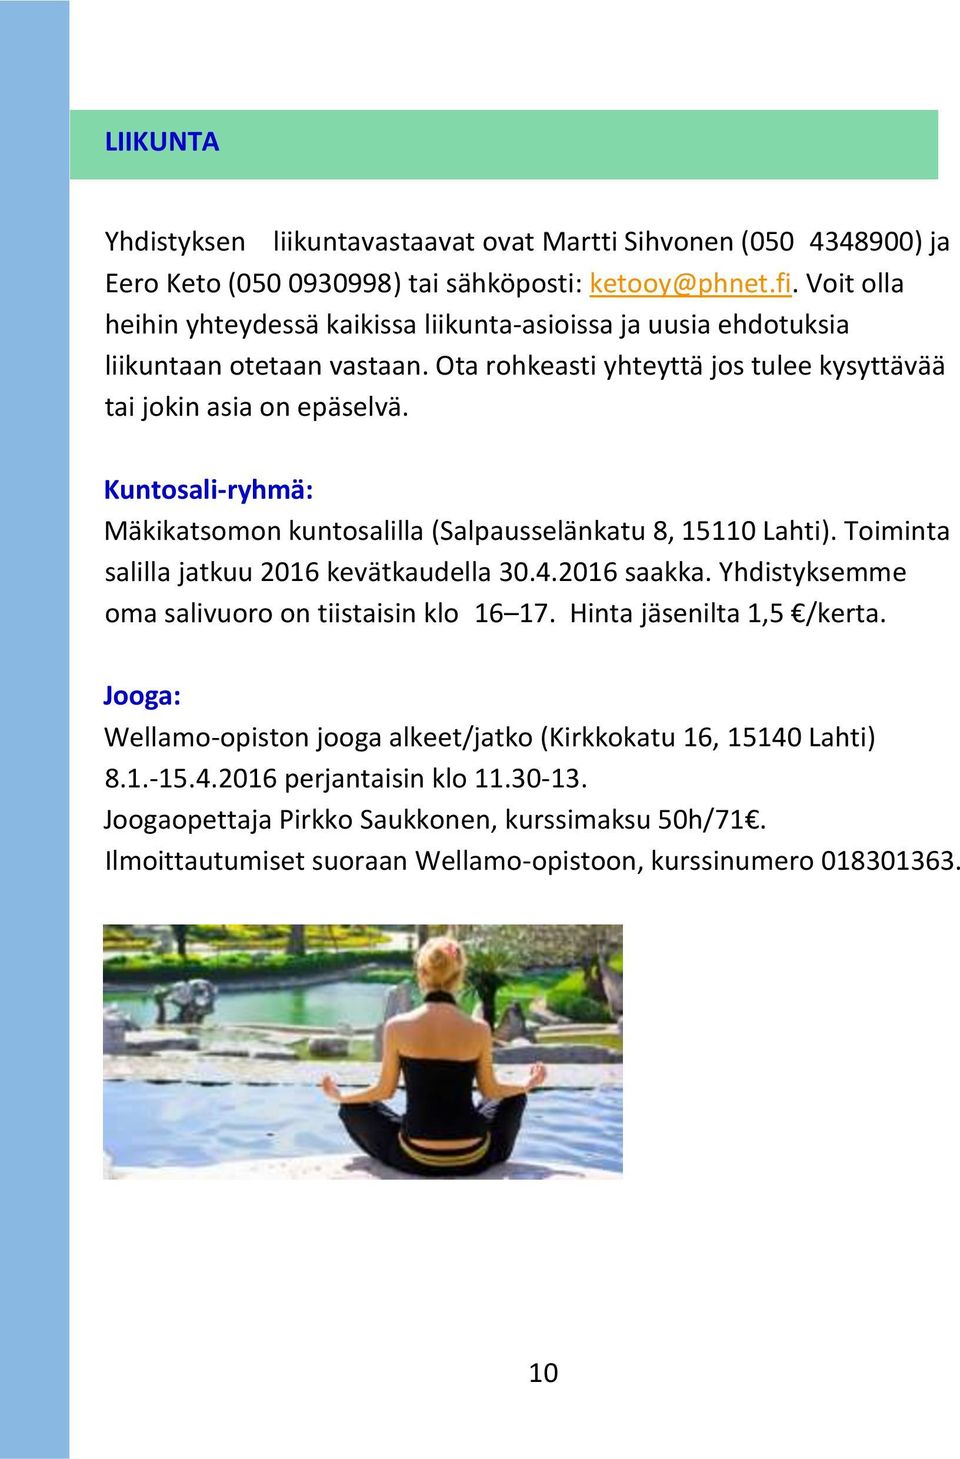 Kuntosali-ryhmä: Mäkikatsomon kuntosalilla (Salpausselänkatu 8, 15110 Lahti). Toiminta salilla jatkuu 2016 kevätkaudella 30.4.2016 saakka. Yhdistyksemme oma salivuoro on tiistaisin klo_16 17.